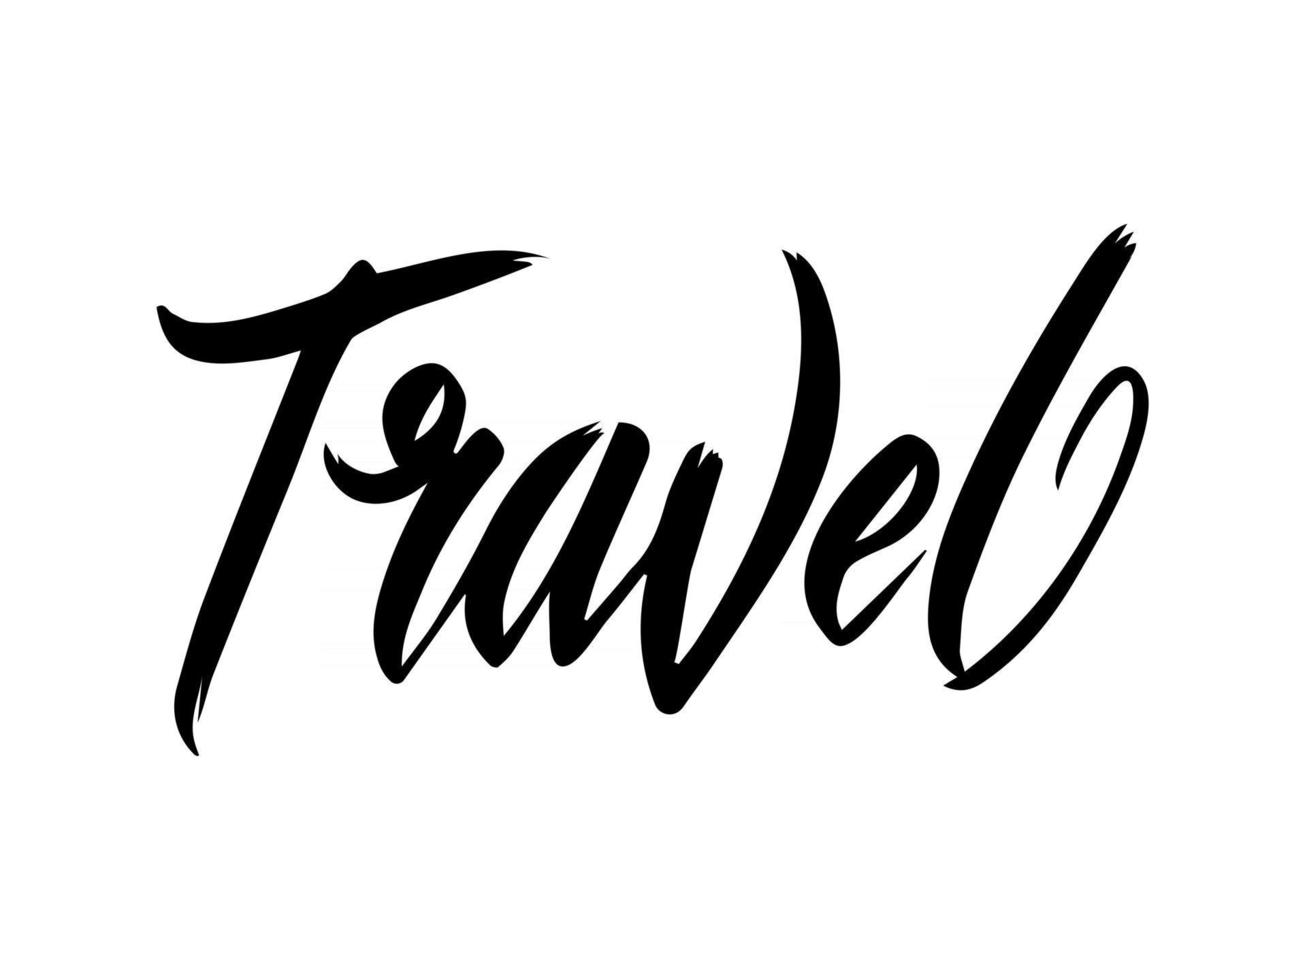 roteiro de viagem de letras de mão, isolado no fundo branco. ilustração em vetor de um logotipo sobre o tema viagens